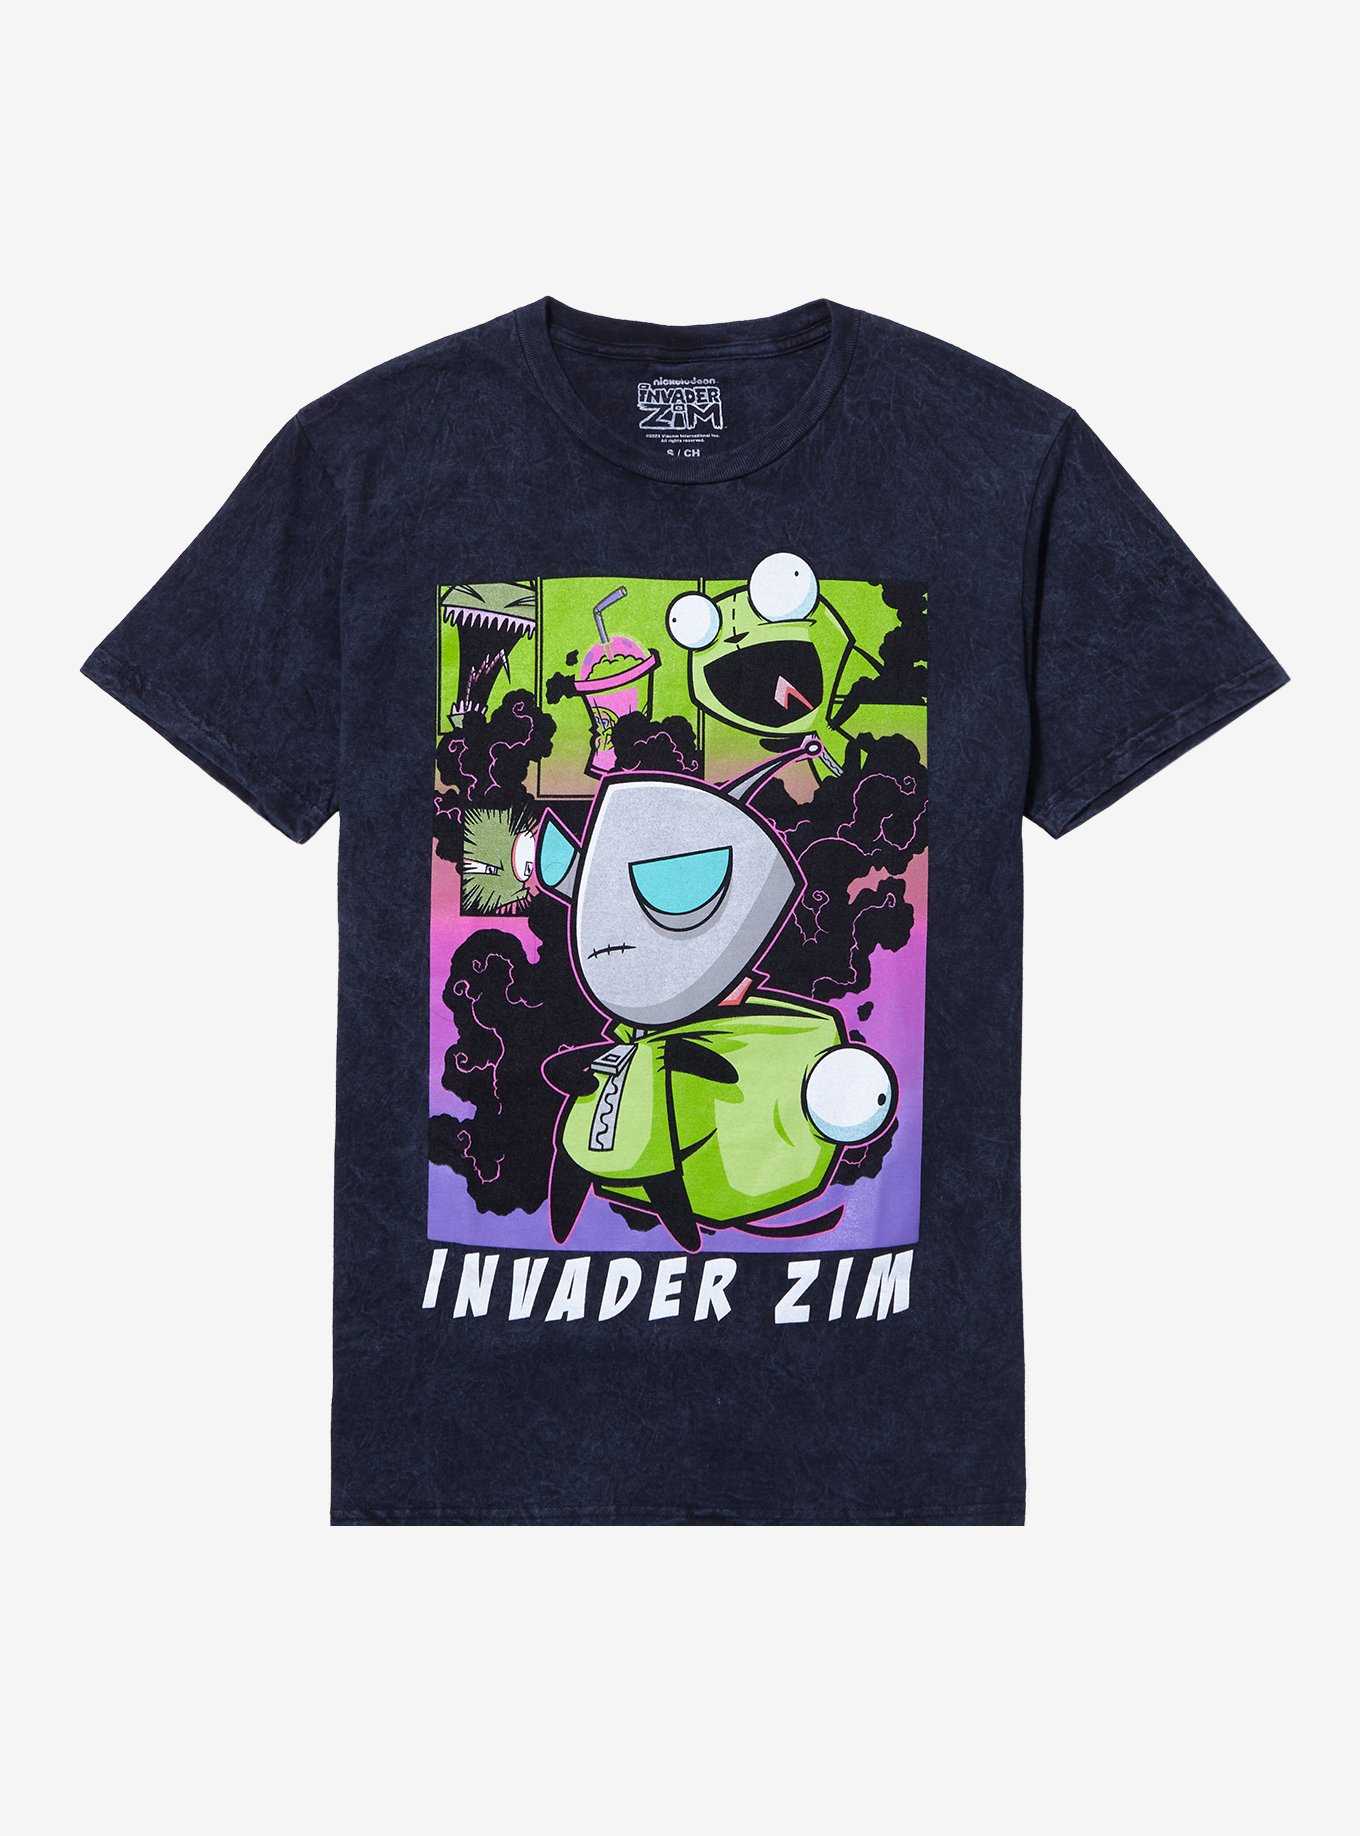 Invader Zim GIR Unzipped Boyfriend Fit Girls T-Shirt, , hi-res